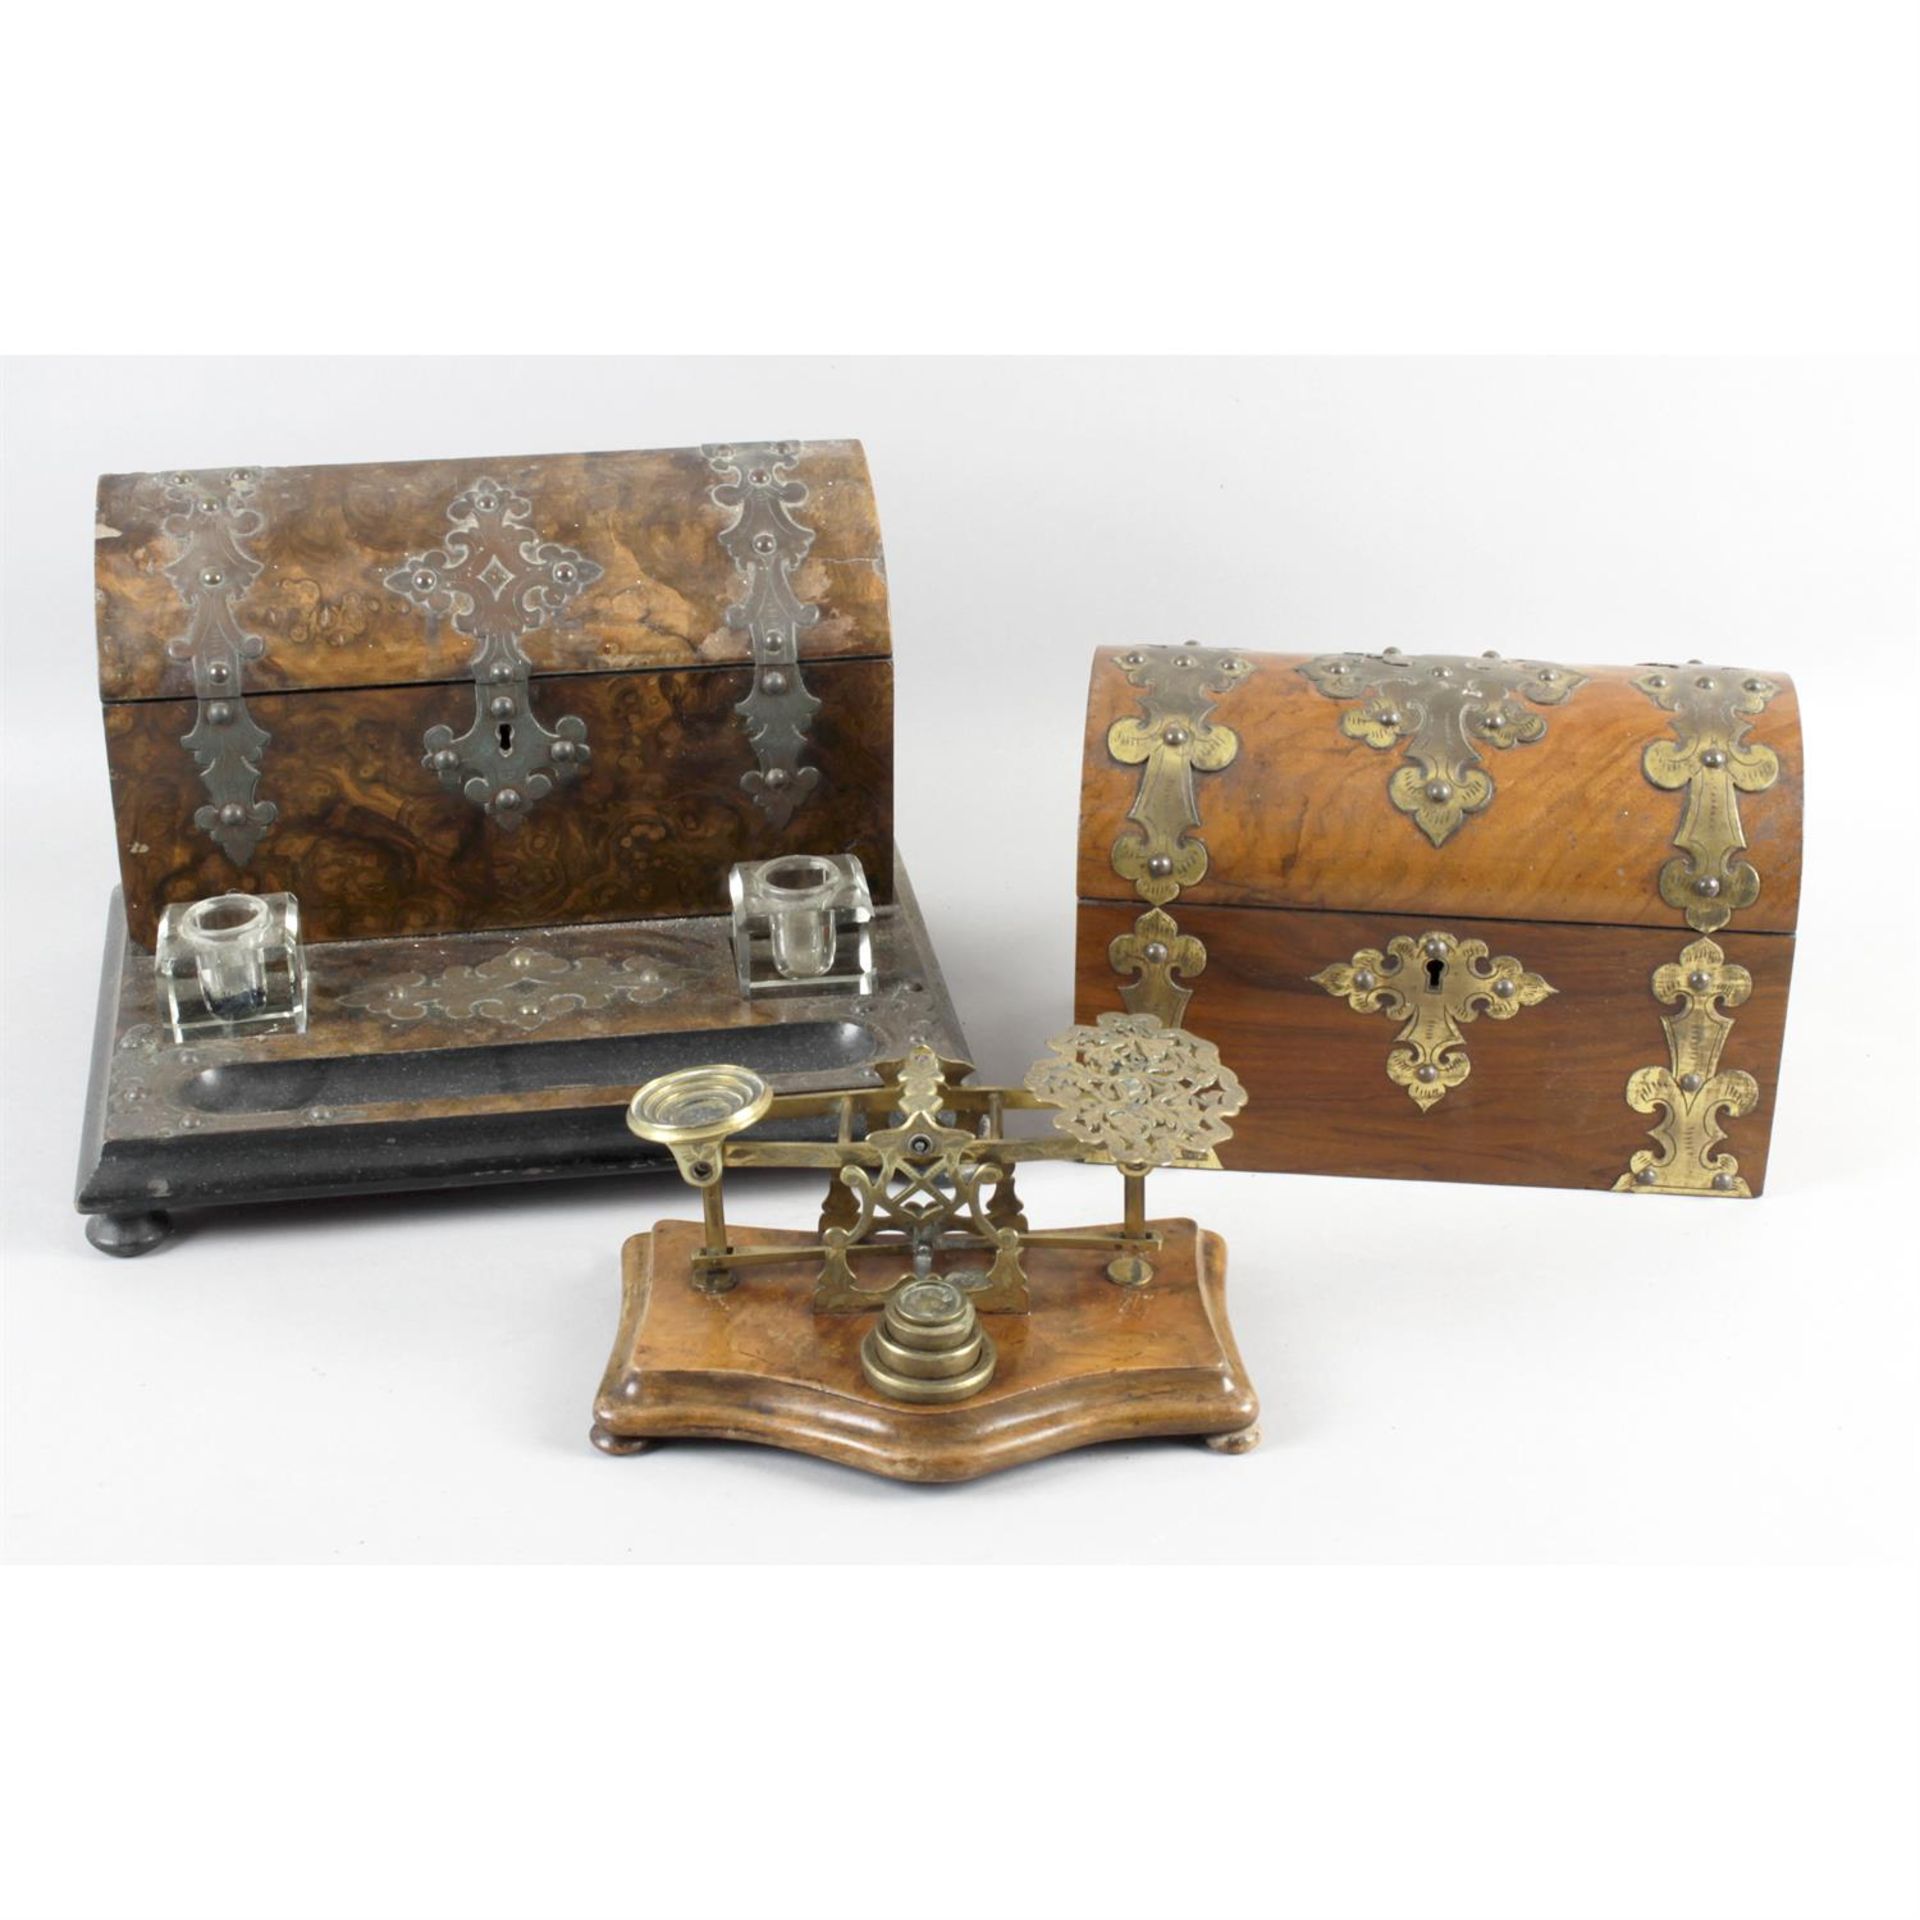 A 19th century mahogany writing box, with another similar example, stationary box,